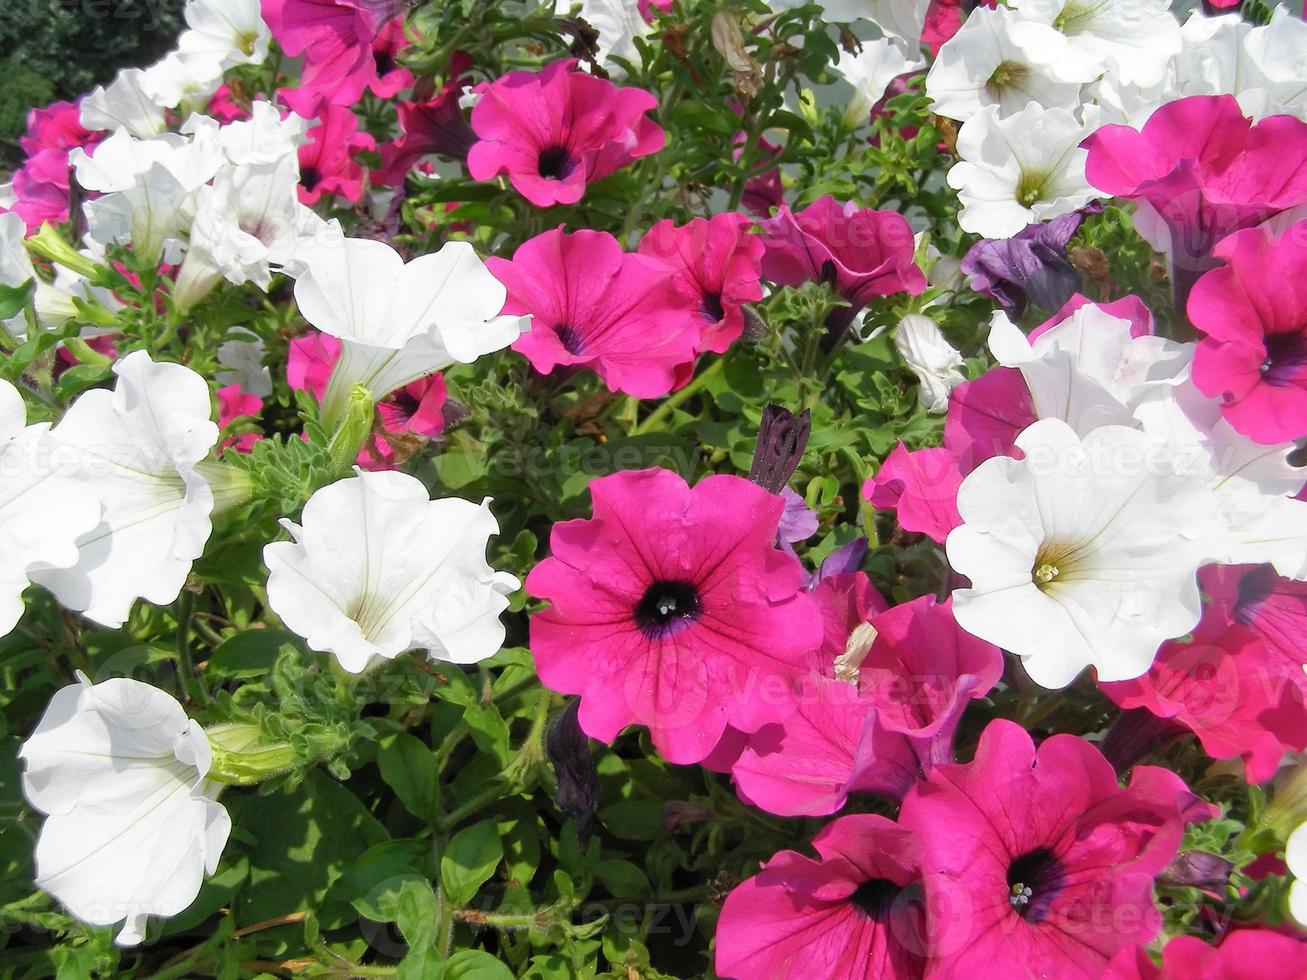 petúnia planta petúnia atkinsiana flor rosa e branca foto